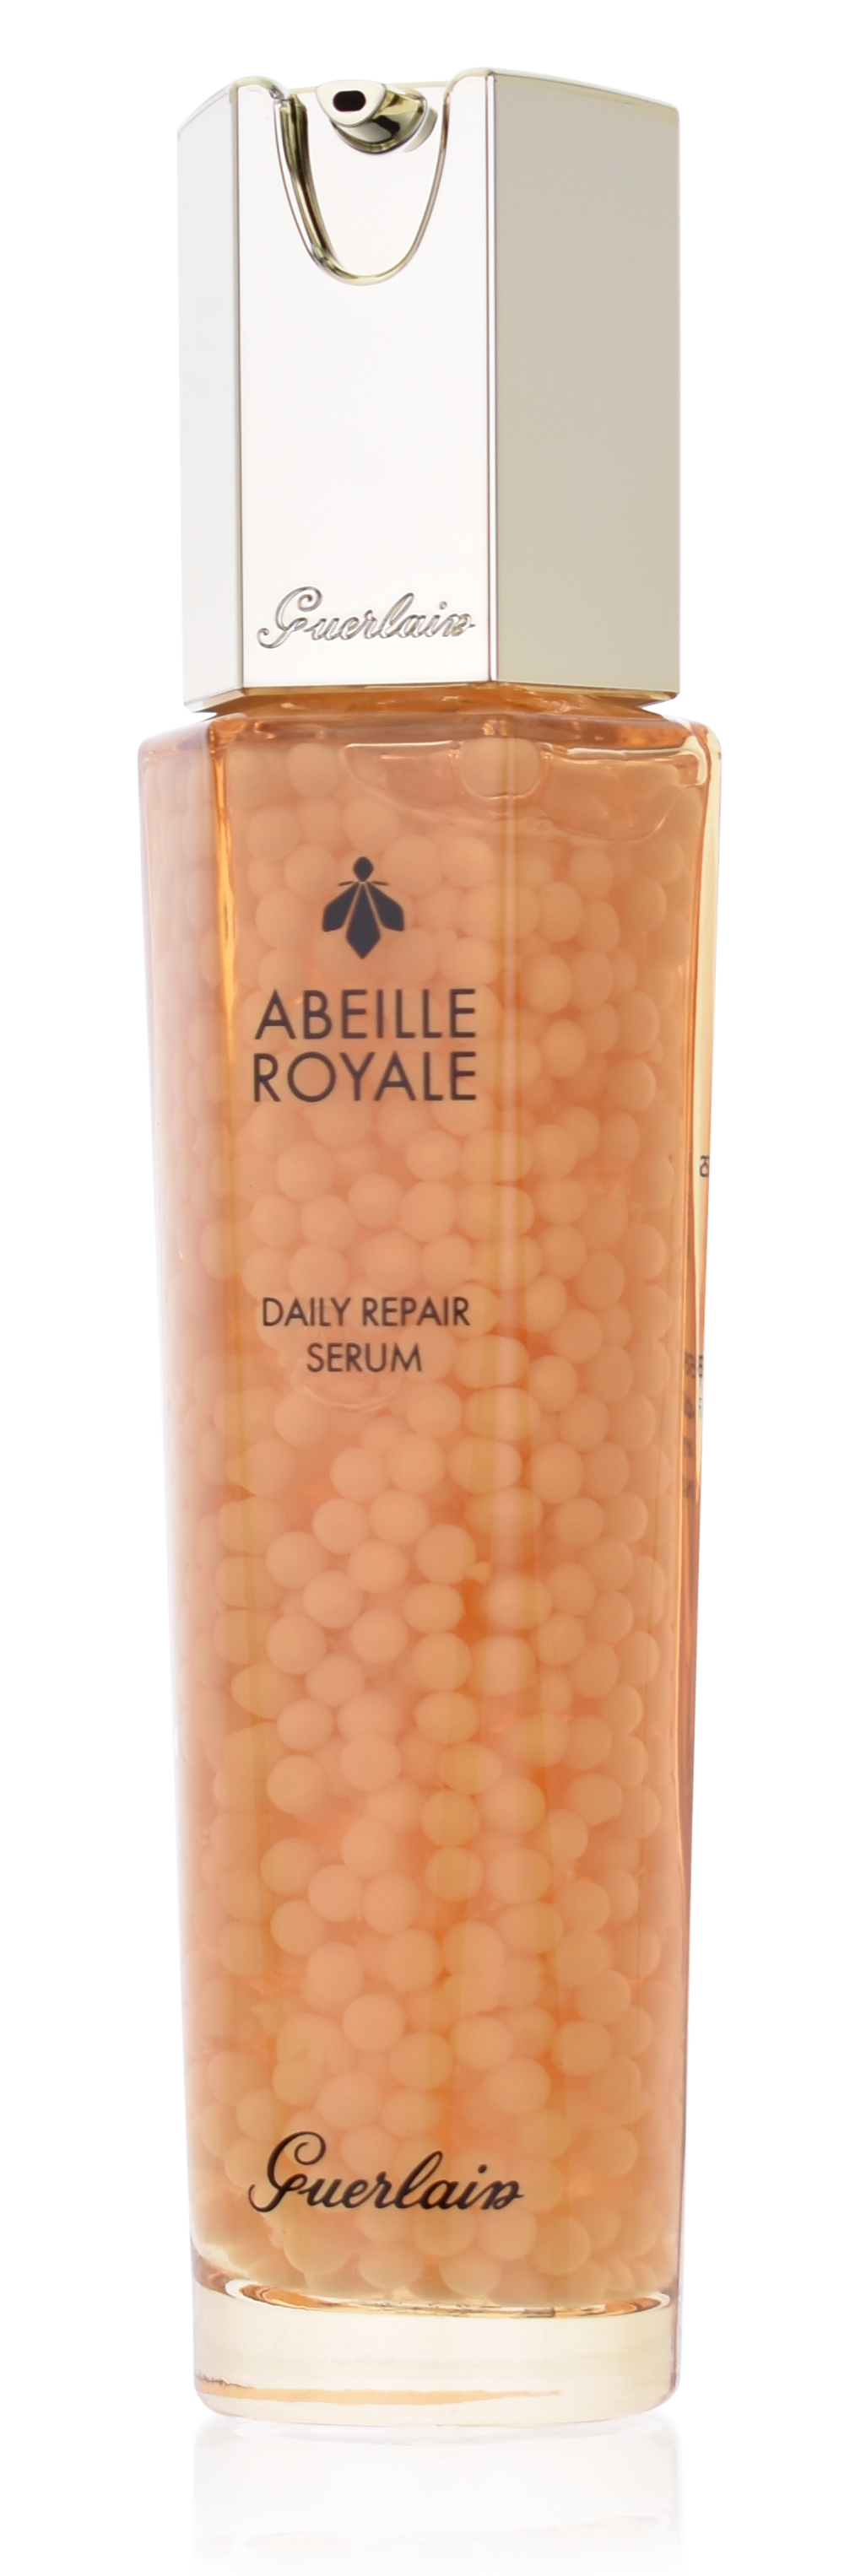 Guerlain Abeille Royale Daily Repair Serum 50 ml 